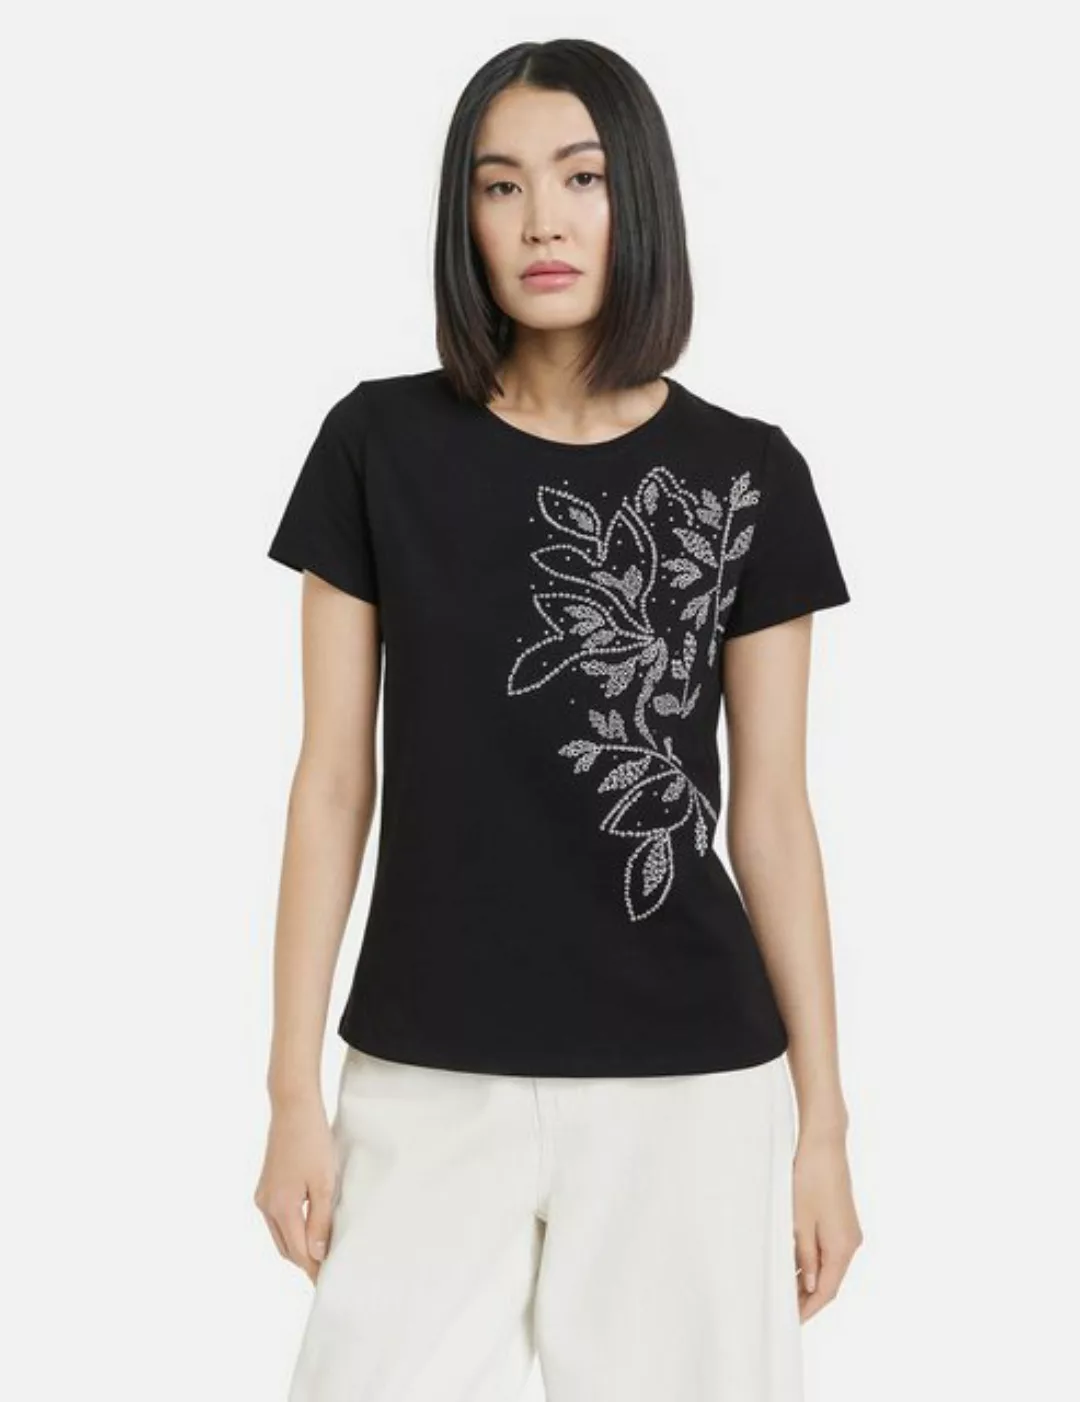 Taifun Kurzarmshirt Baumwoll-T-Shirt mit platziertem Print günstig online kaufen